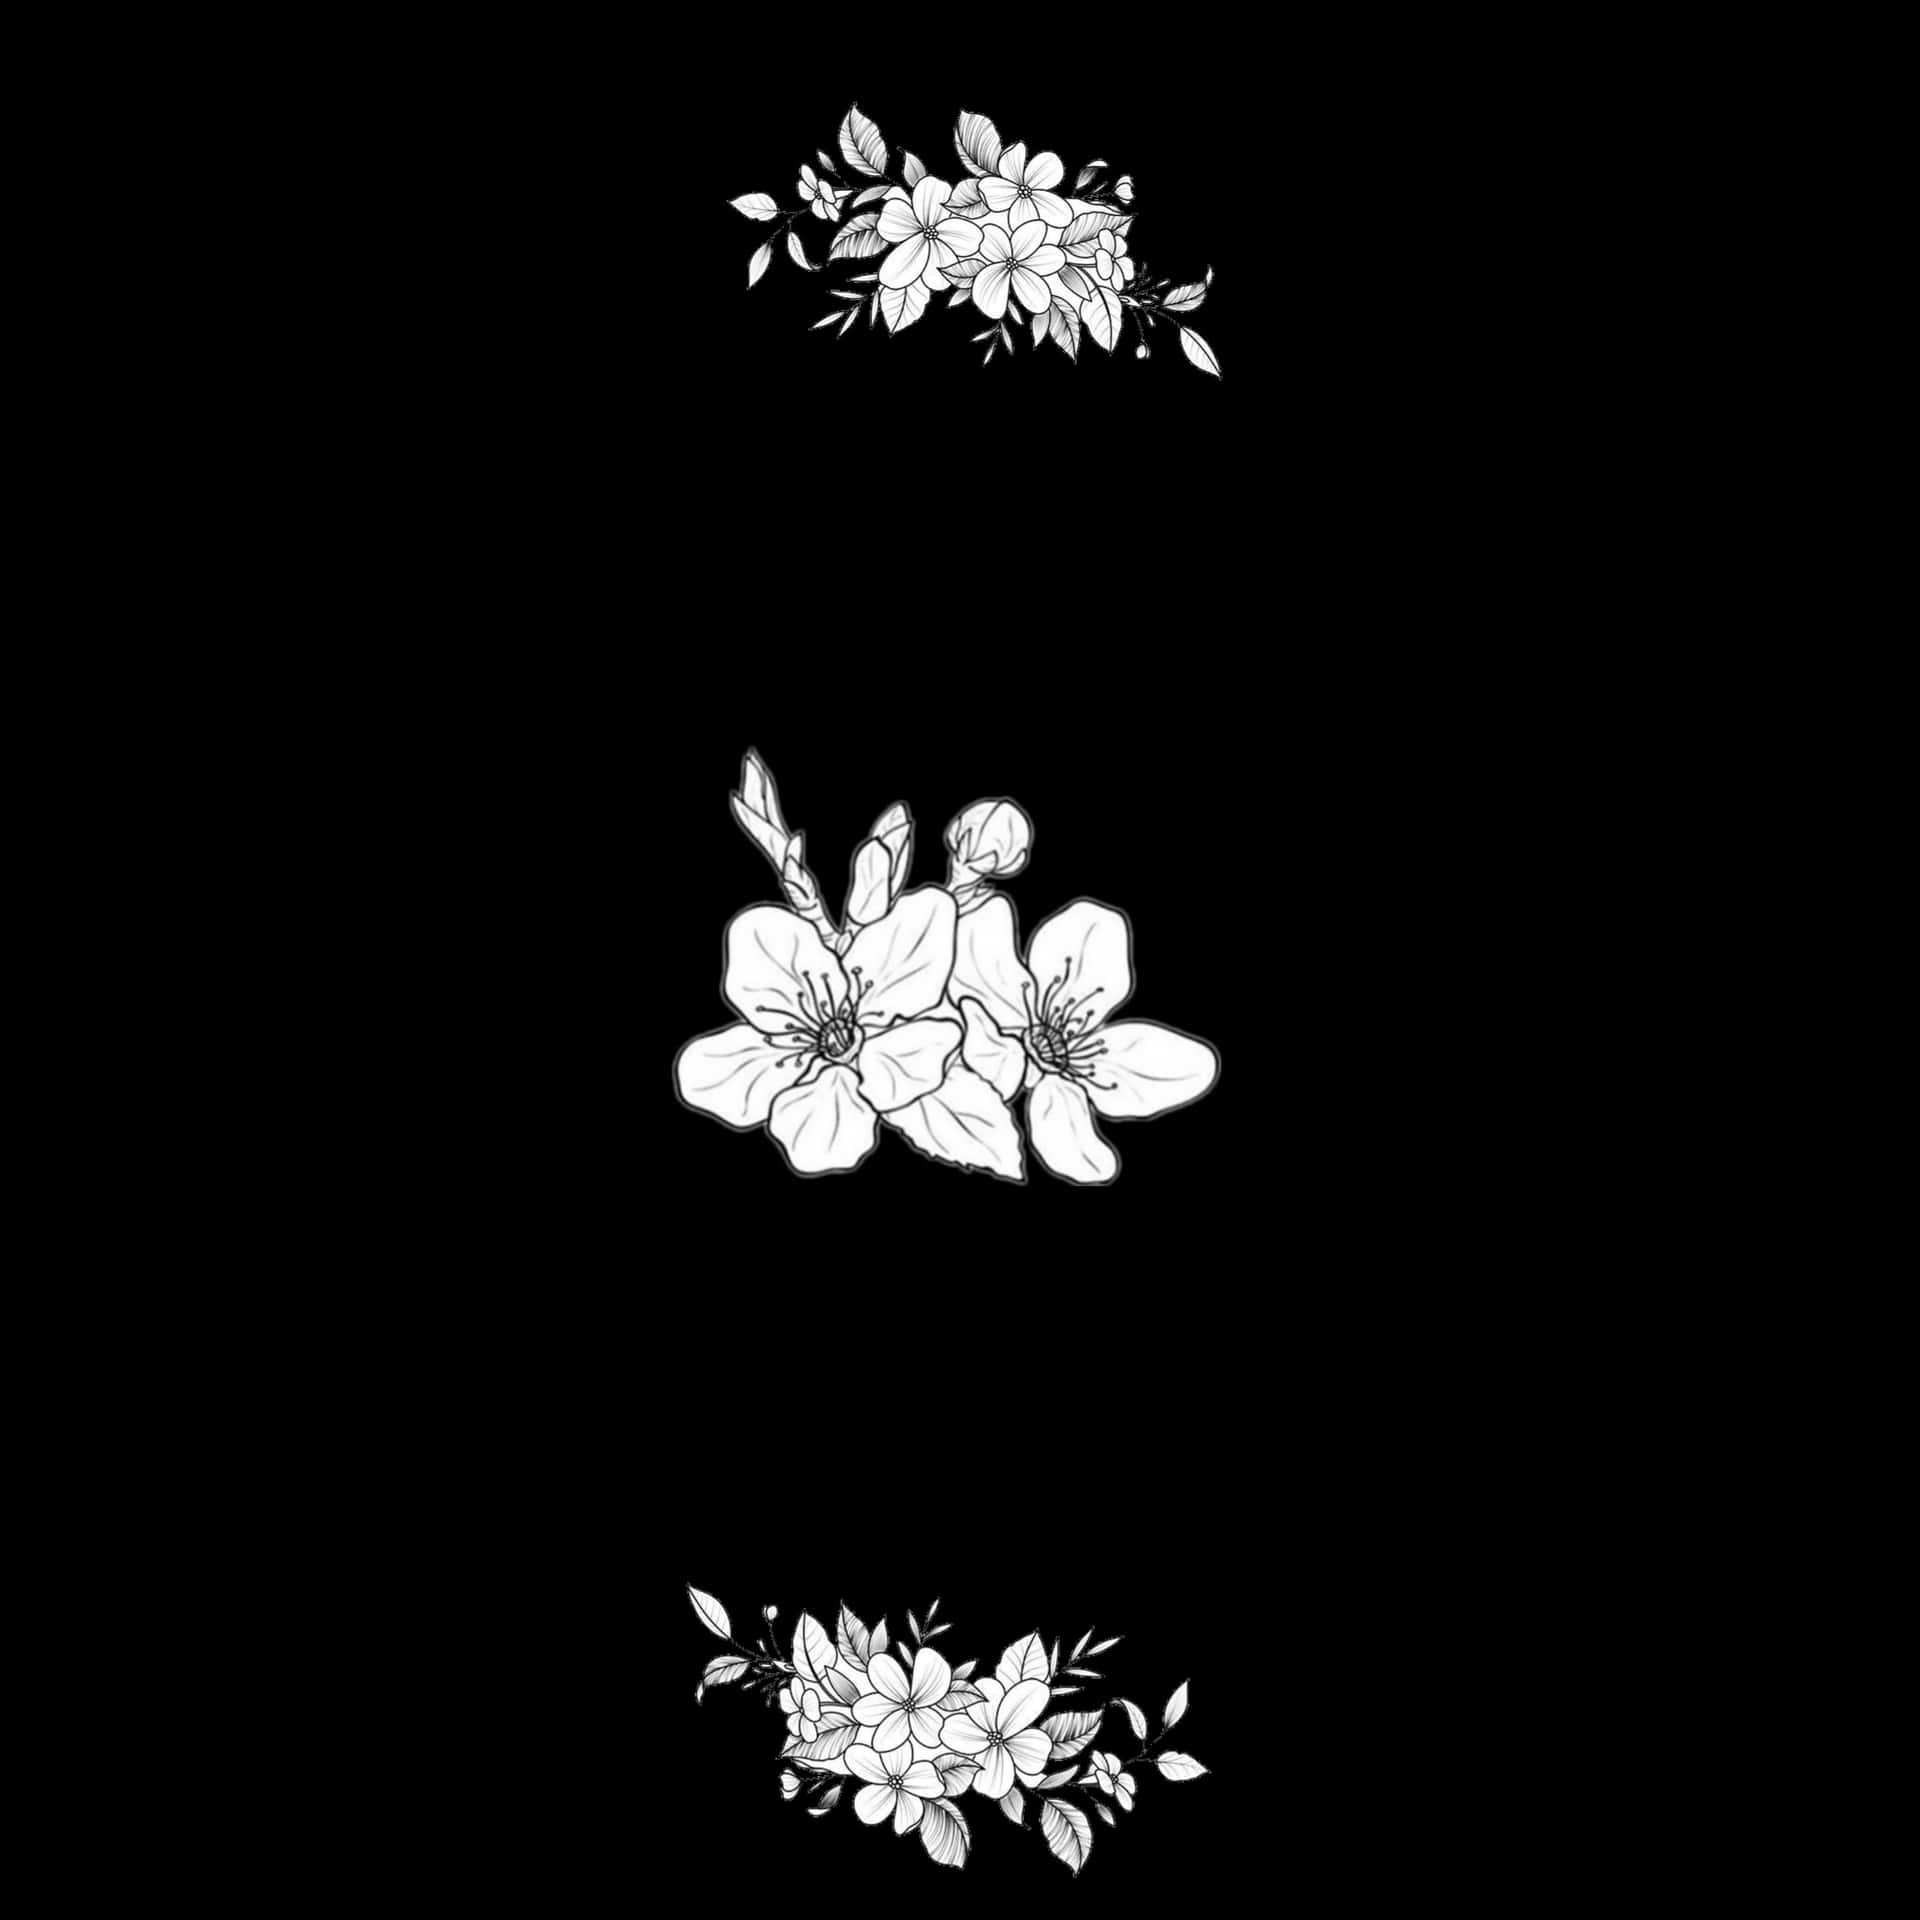 Einschwarzer Hintergrund Mit Weißen Blumen Darauf